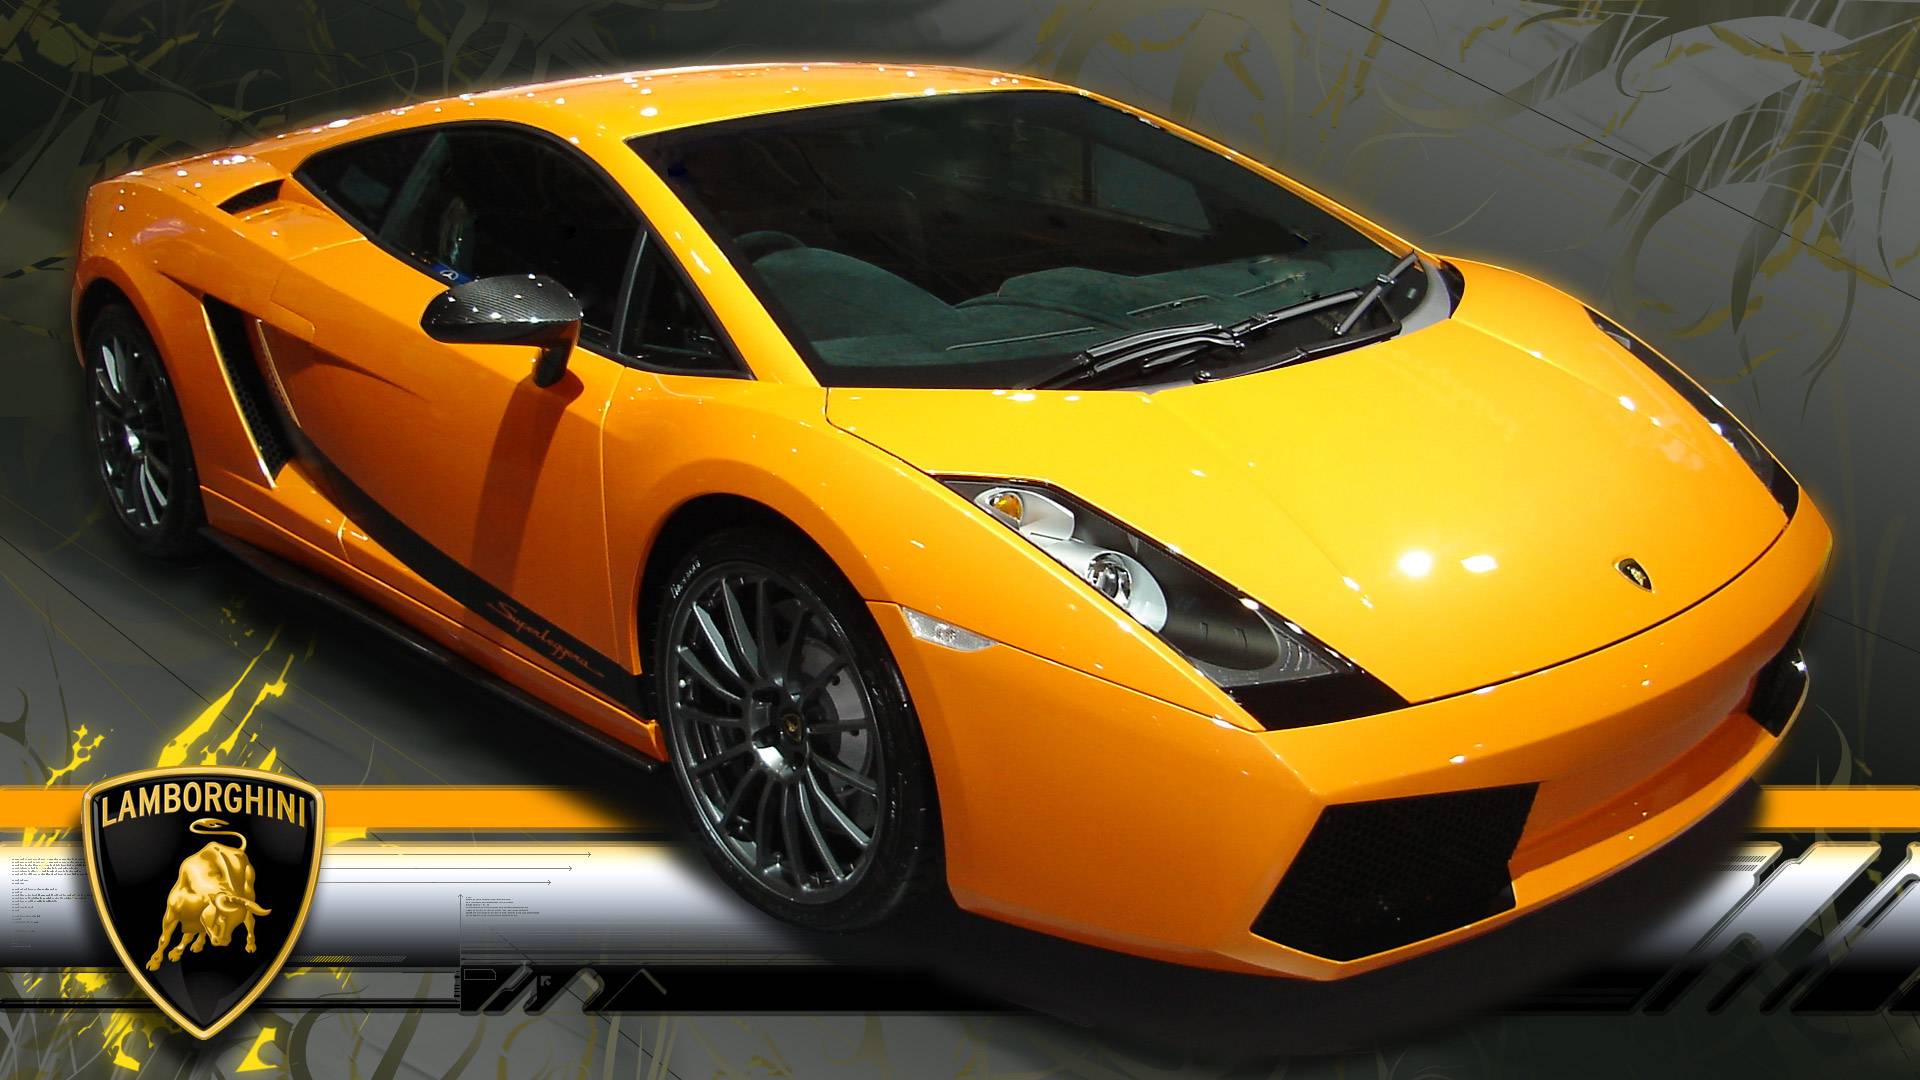 Lamborghini HD Wallpapers Free Download